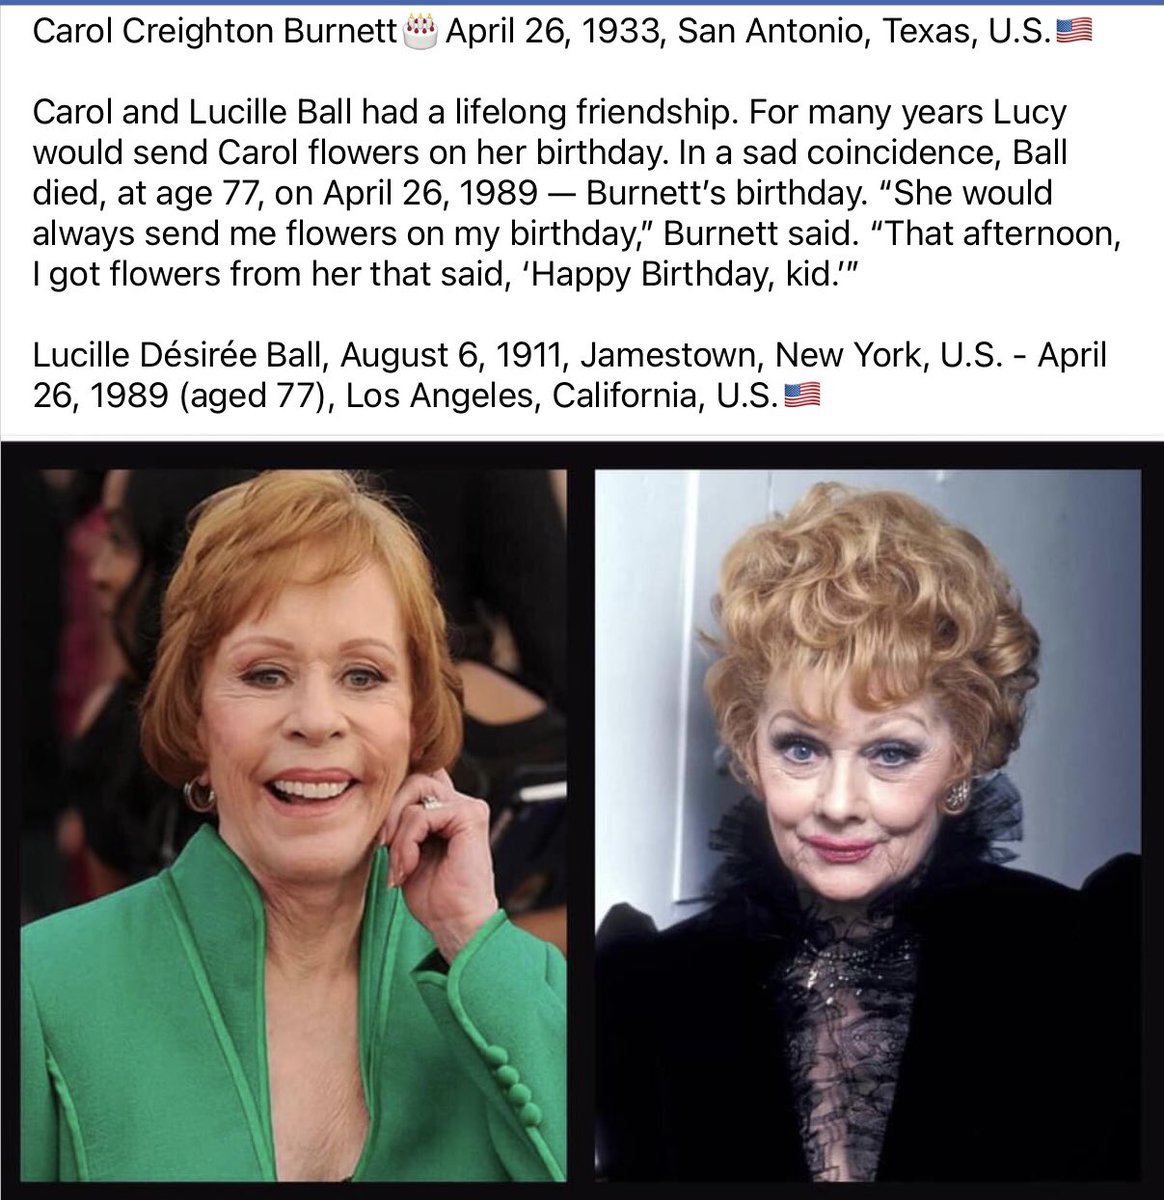 Carol Burnett #CarolBurnett 

Lucille Ball #LucilleBall Lucy #Lucy #LUCY